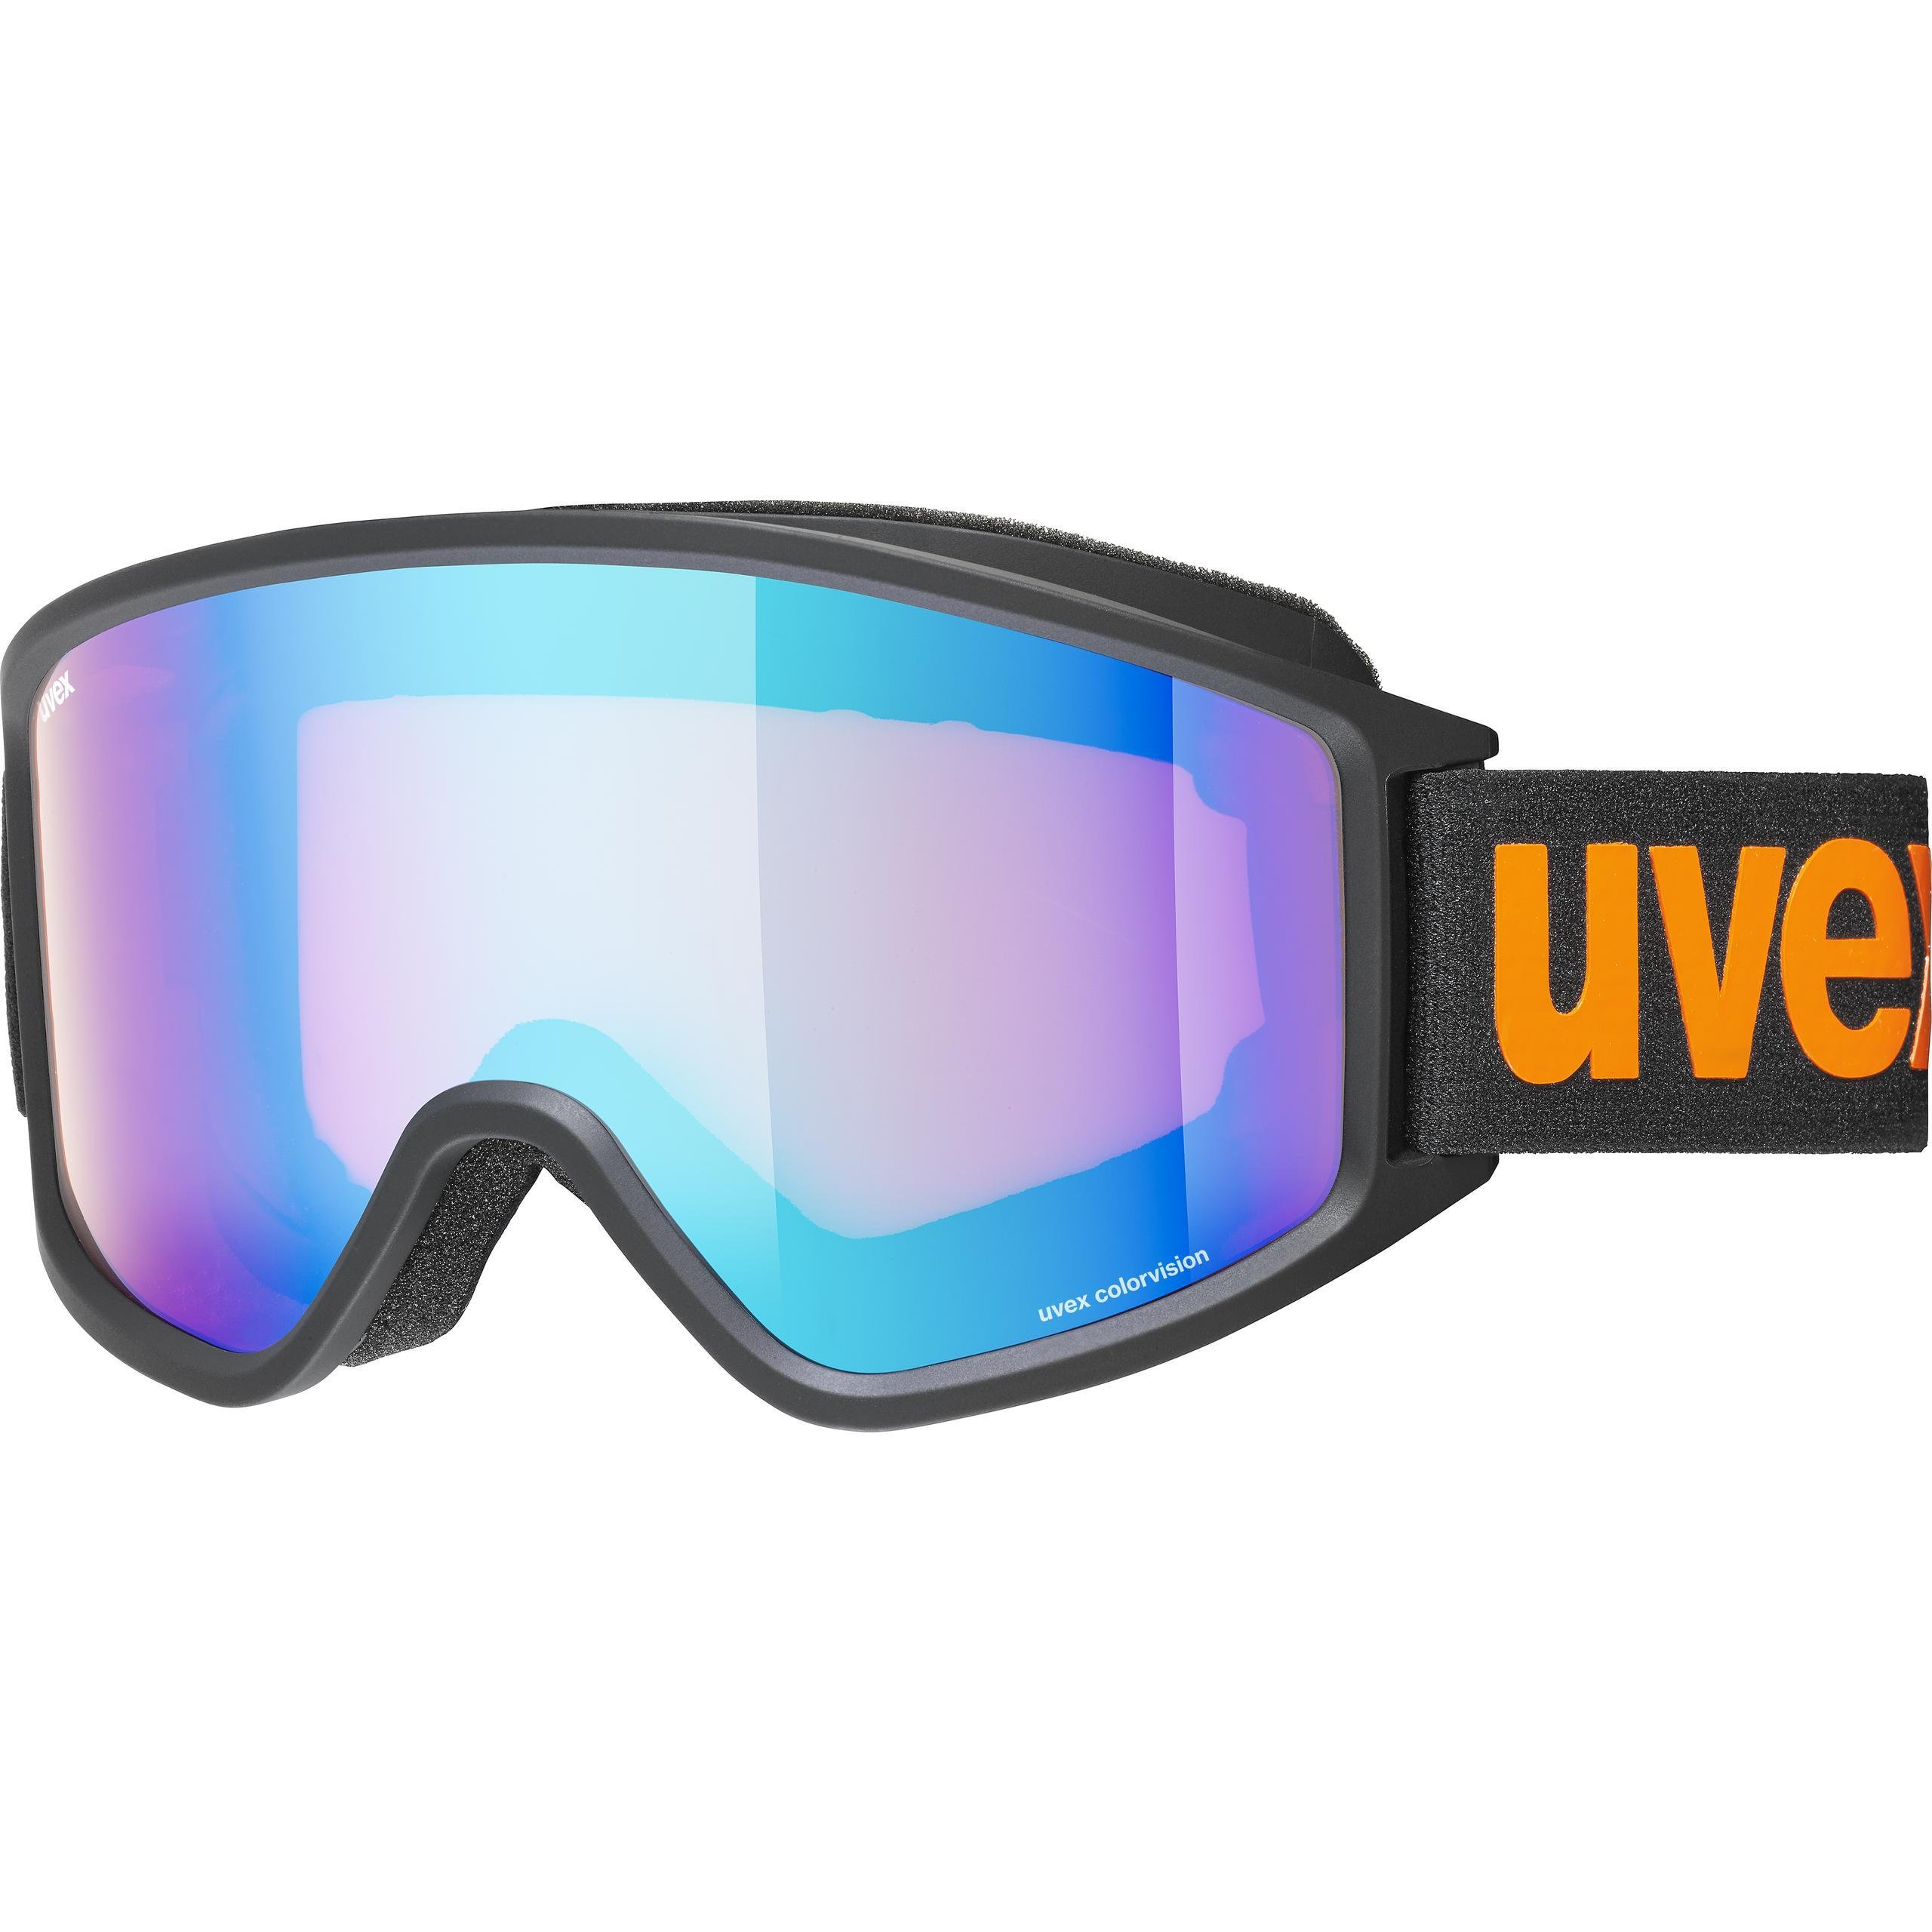 Uvex G.Gl 3000 Cv Siyah Mat Sl/Mavi Turuncu Kayak Gözlüğü